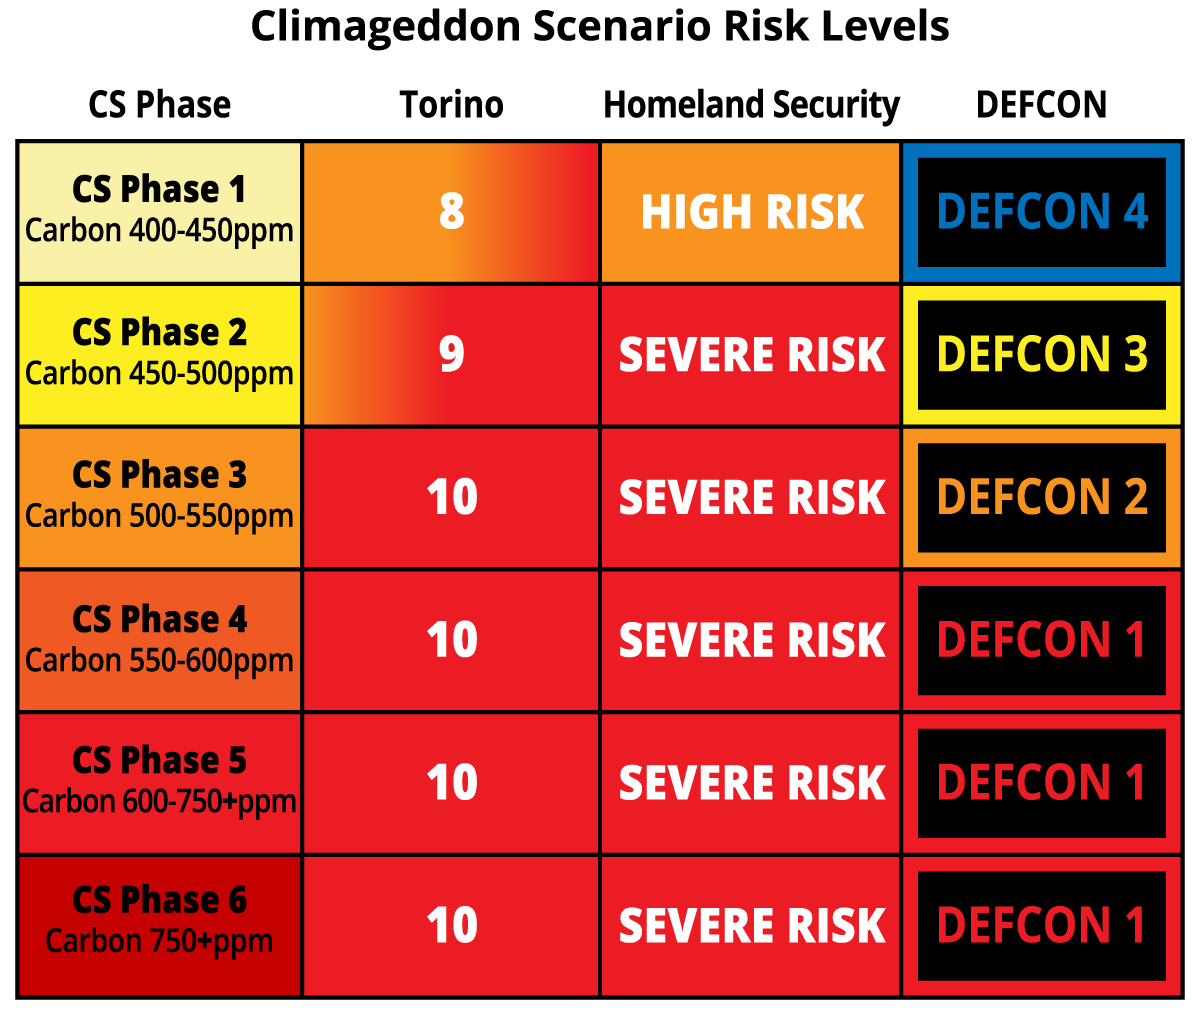 Chapter_6_Climageddon_Scenario_Risk_Levels.png